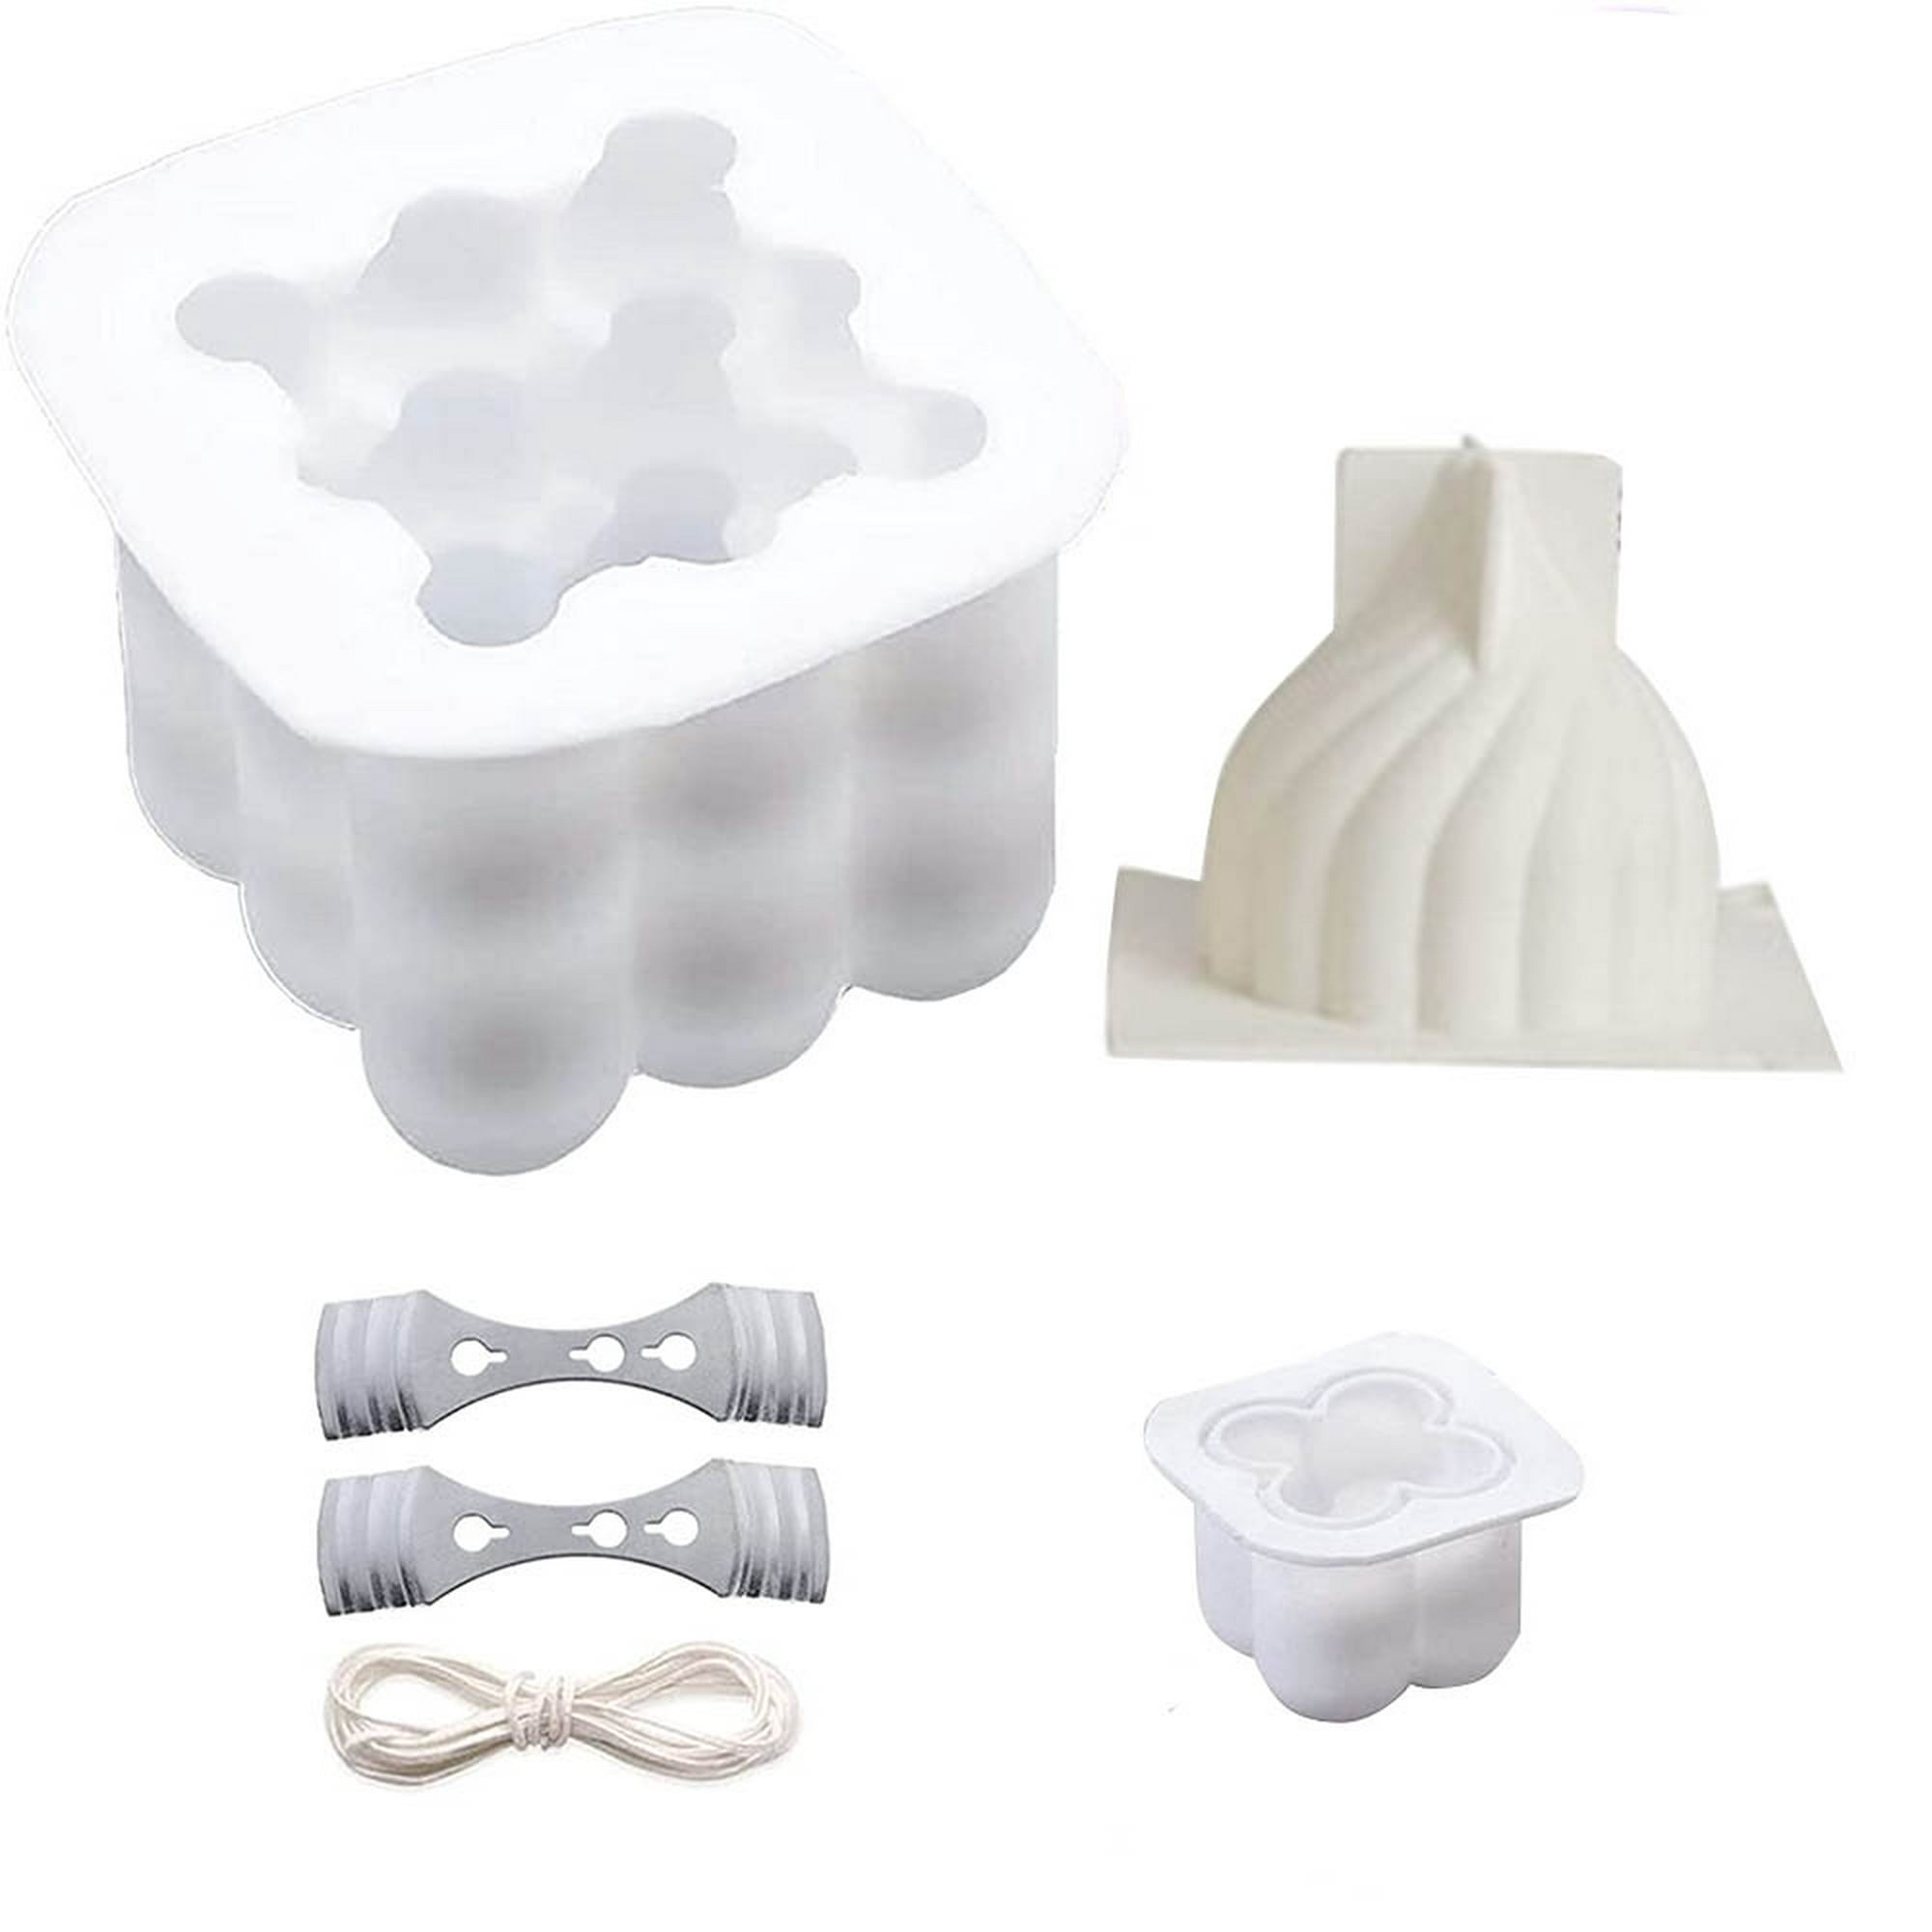 URAQT Kit Moldes para Hacer Velas, 19pcs con 3 Silicona de 3D, Soportes para  15 Mechas, Hecho a Mano DIY para Manualidades, Resina y Jabones-A :  .es: Hogar y cocina